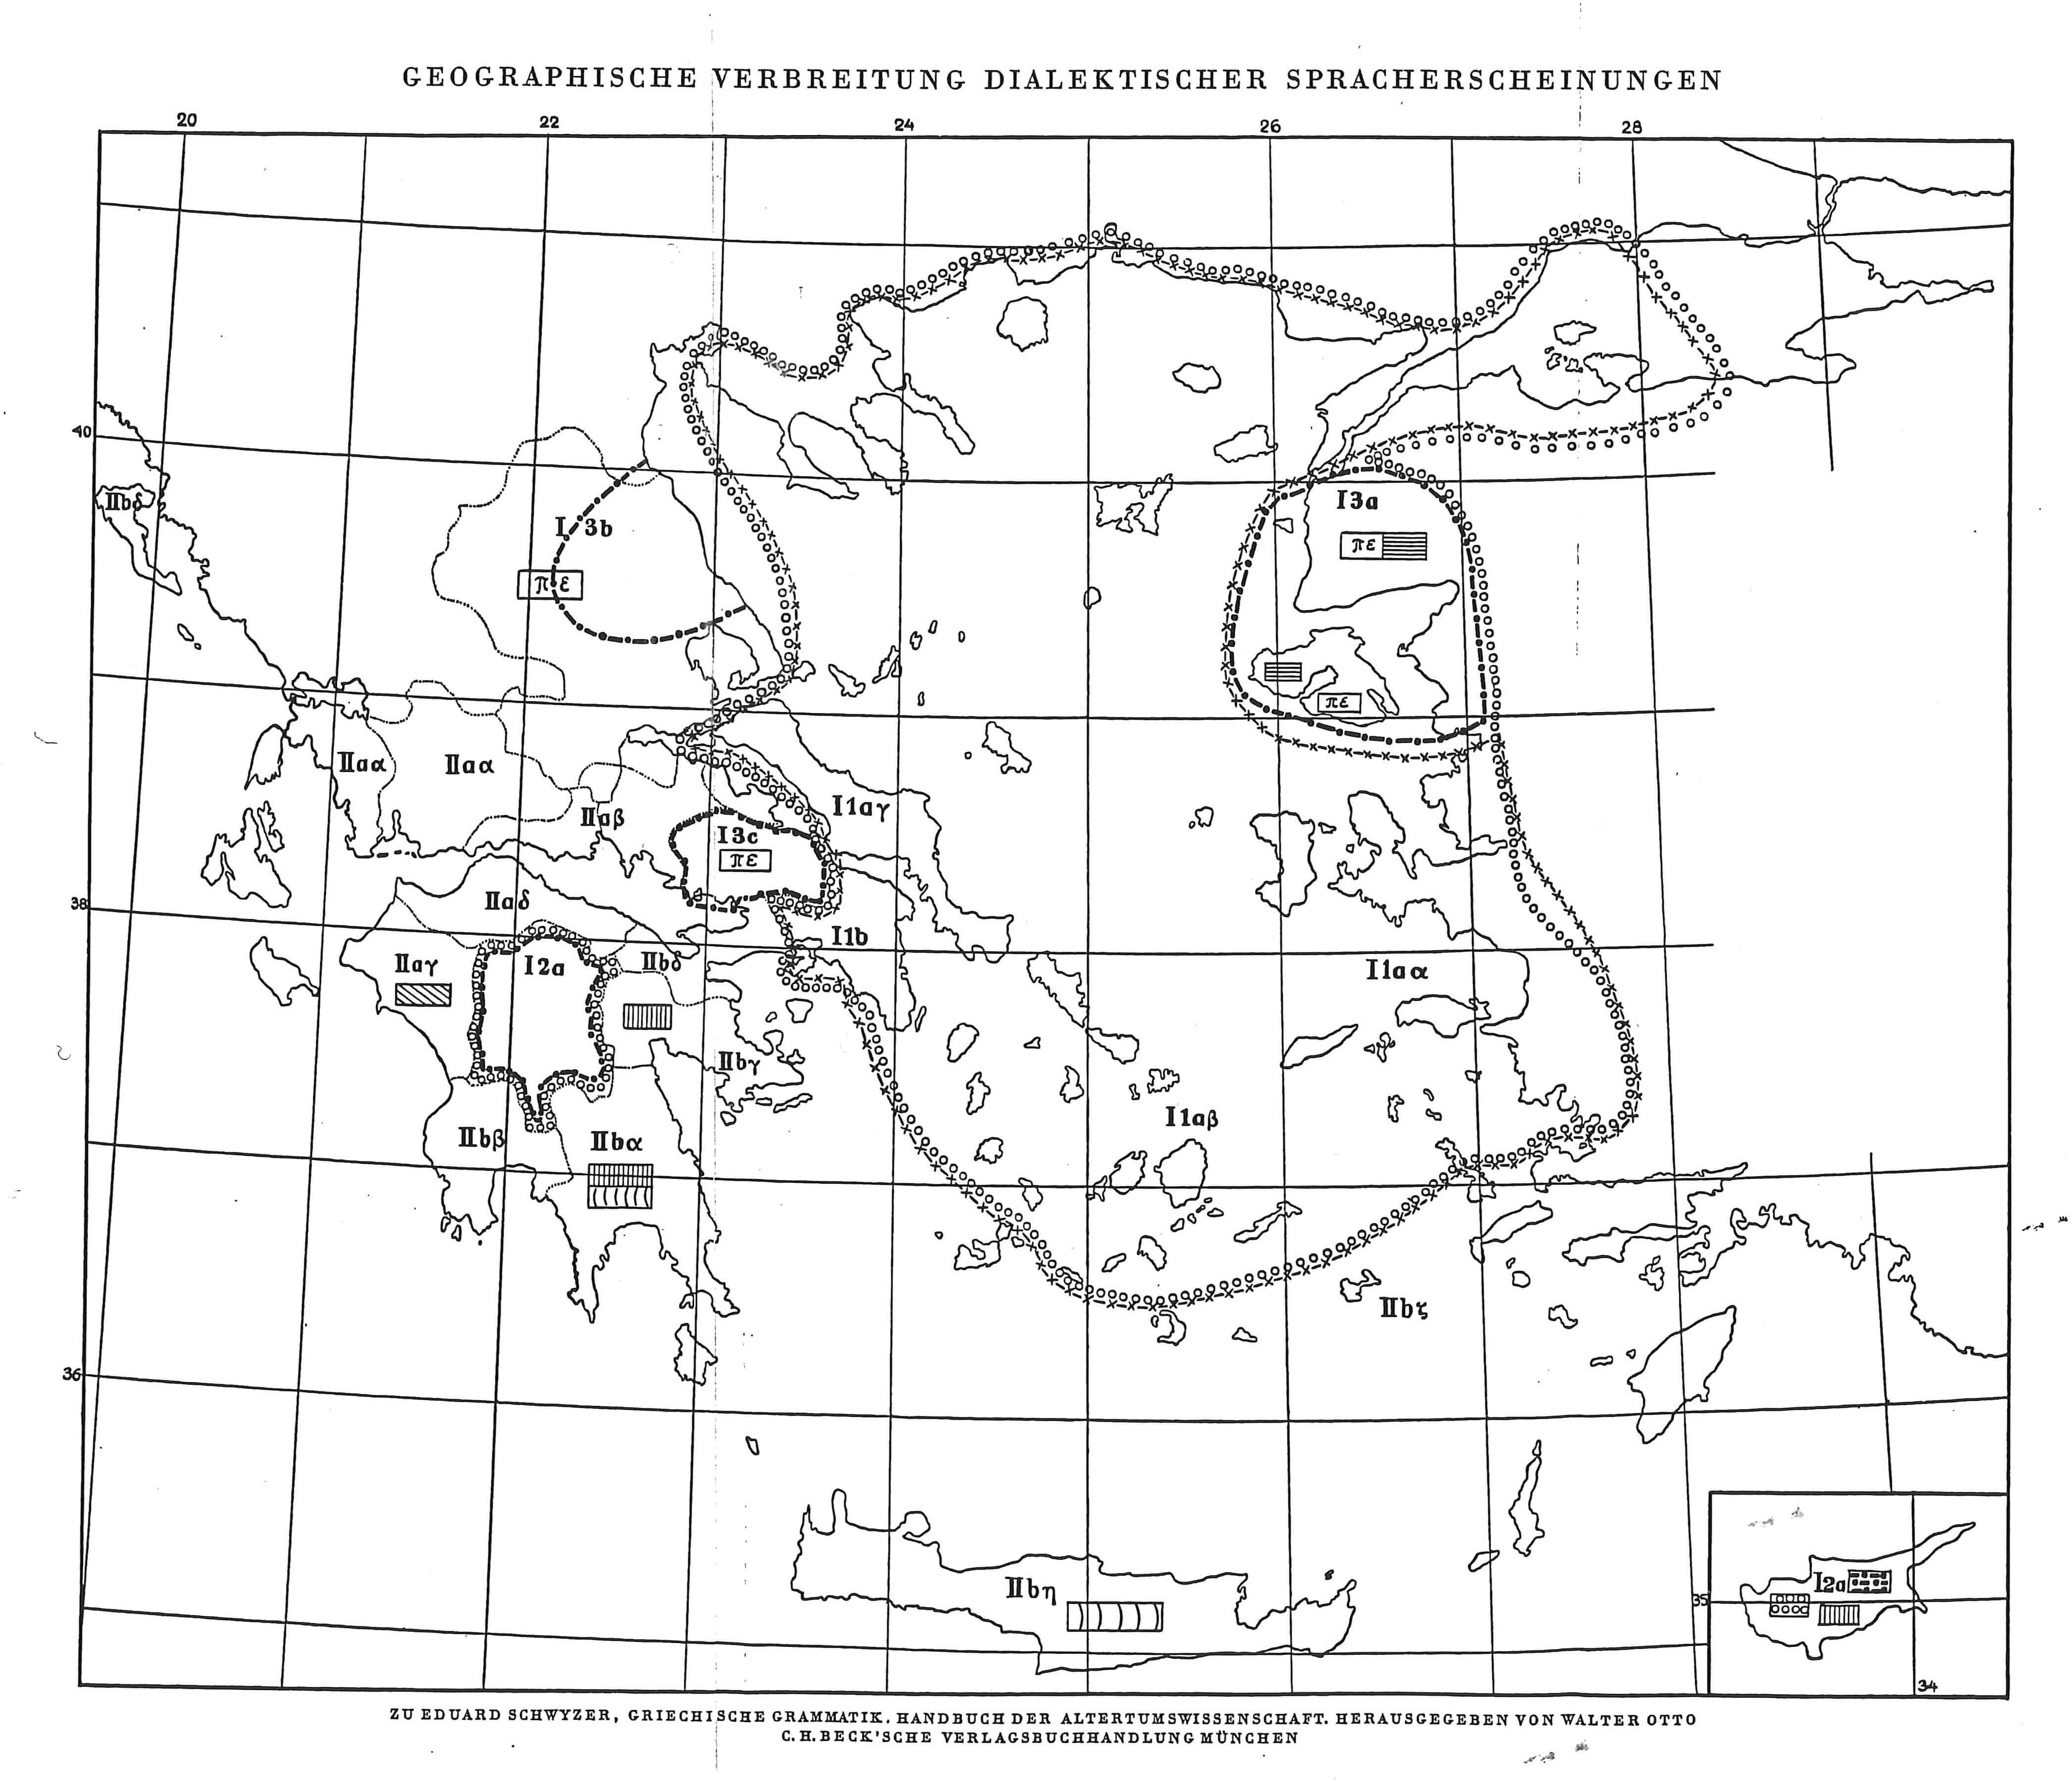 Kort over diaglosser i det græske område